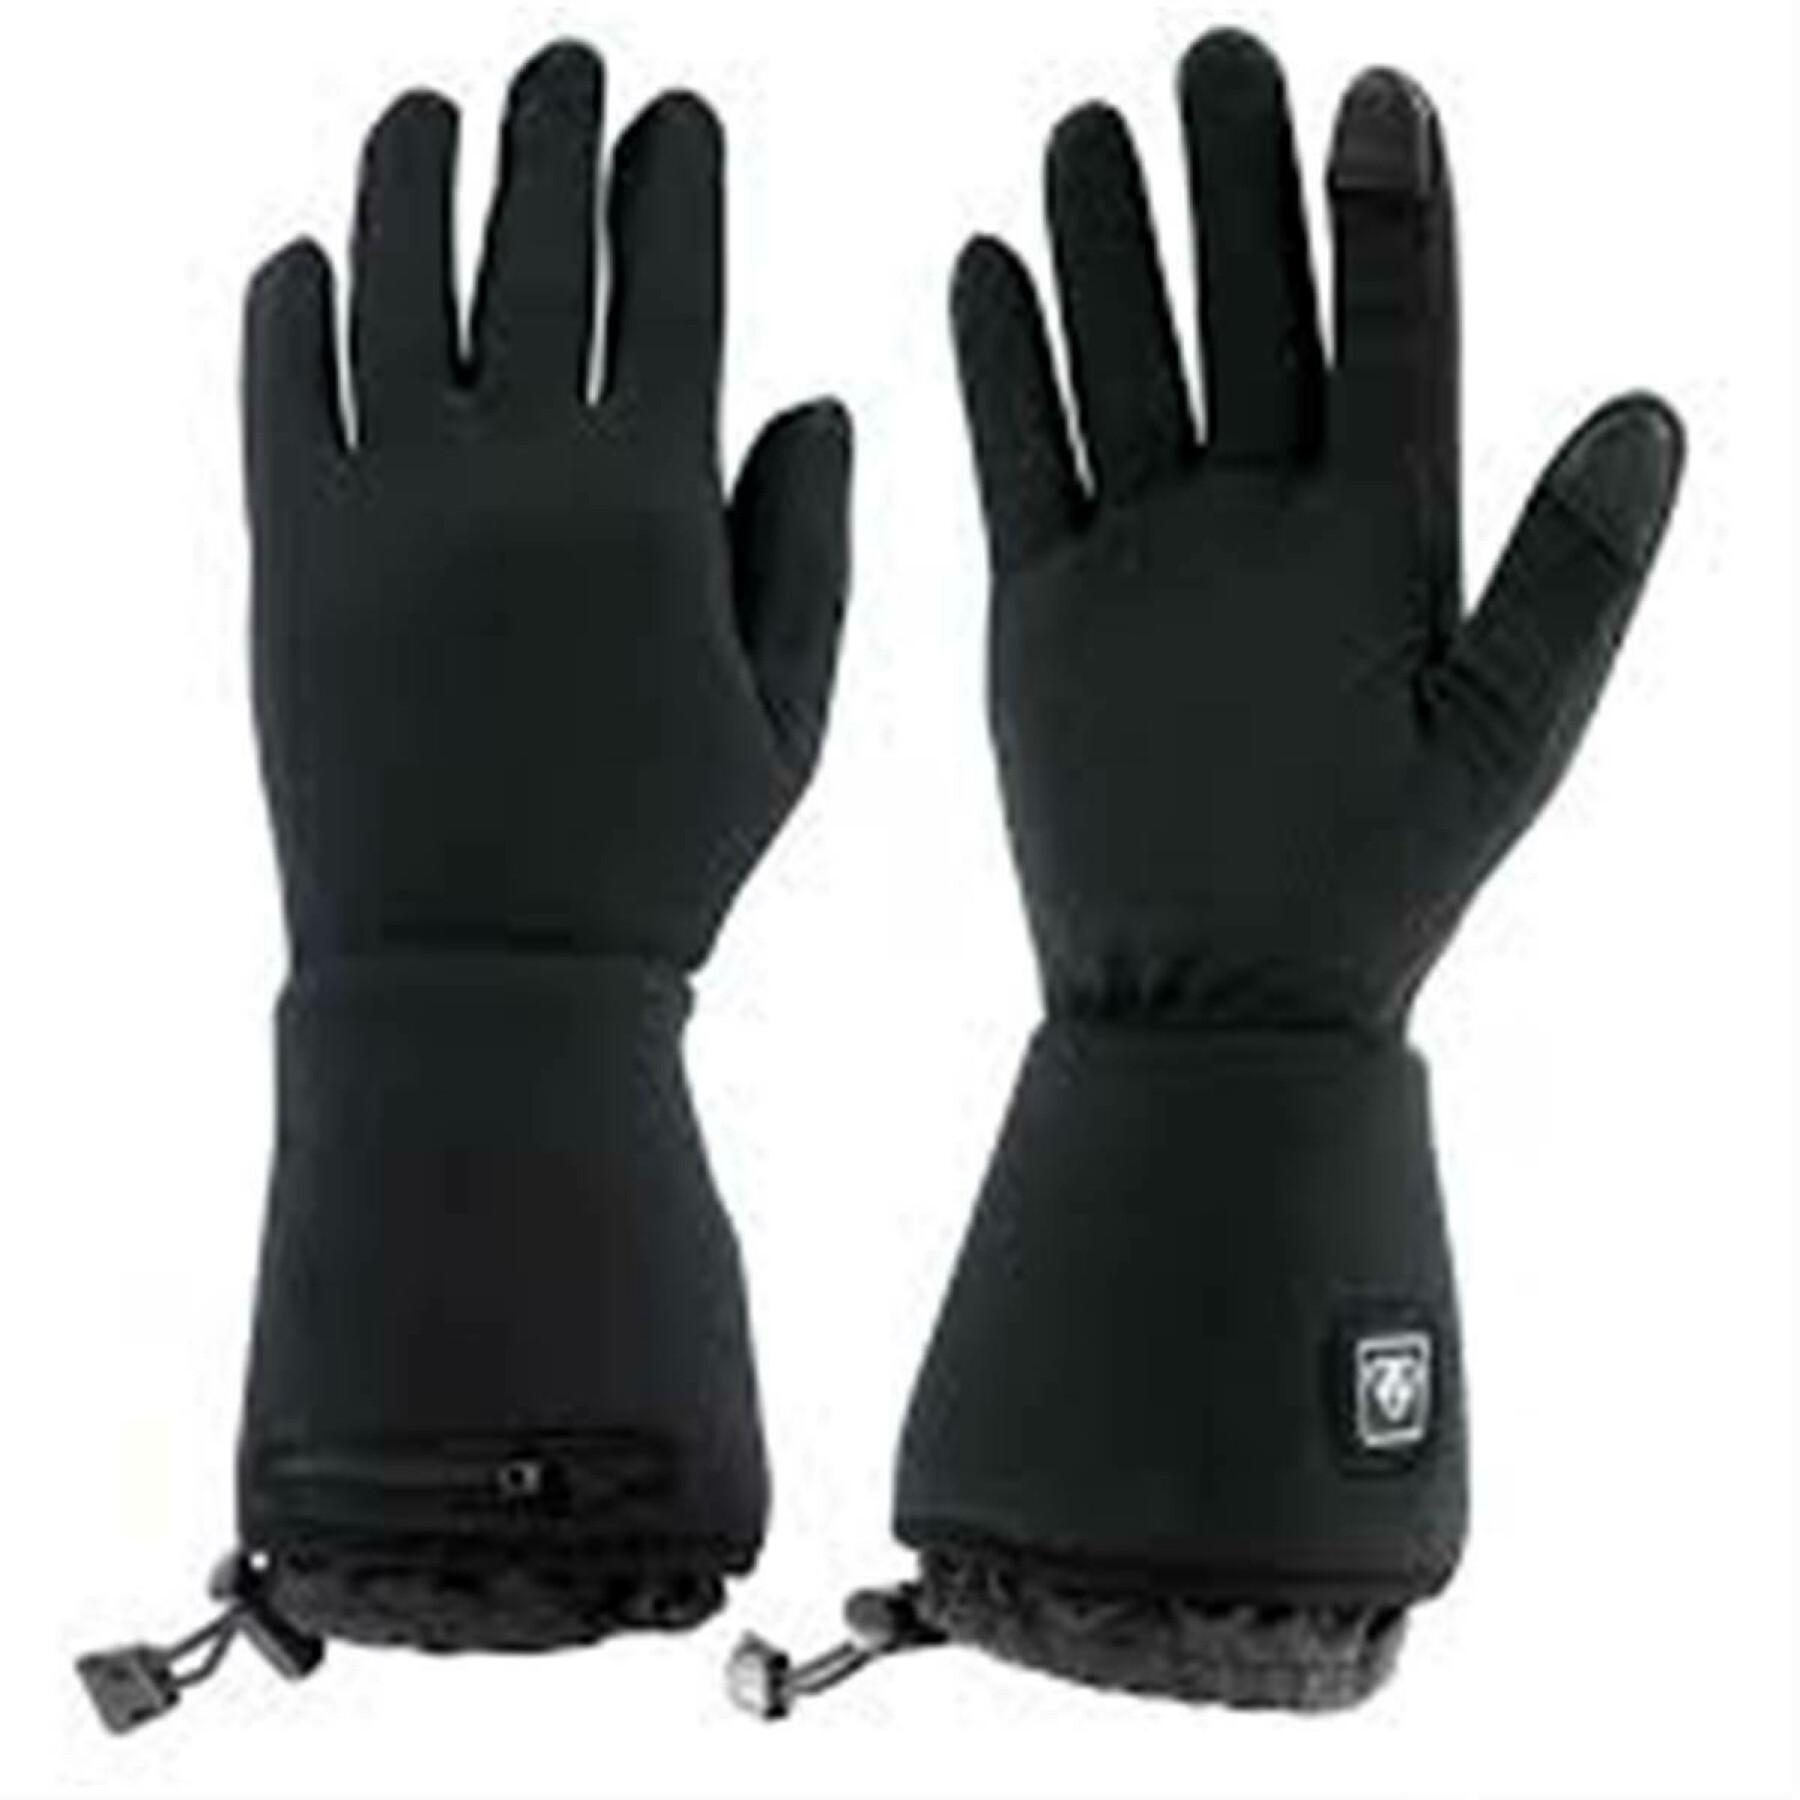 Thin gloves Wantalis sancy